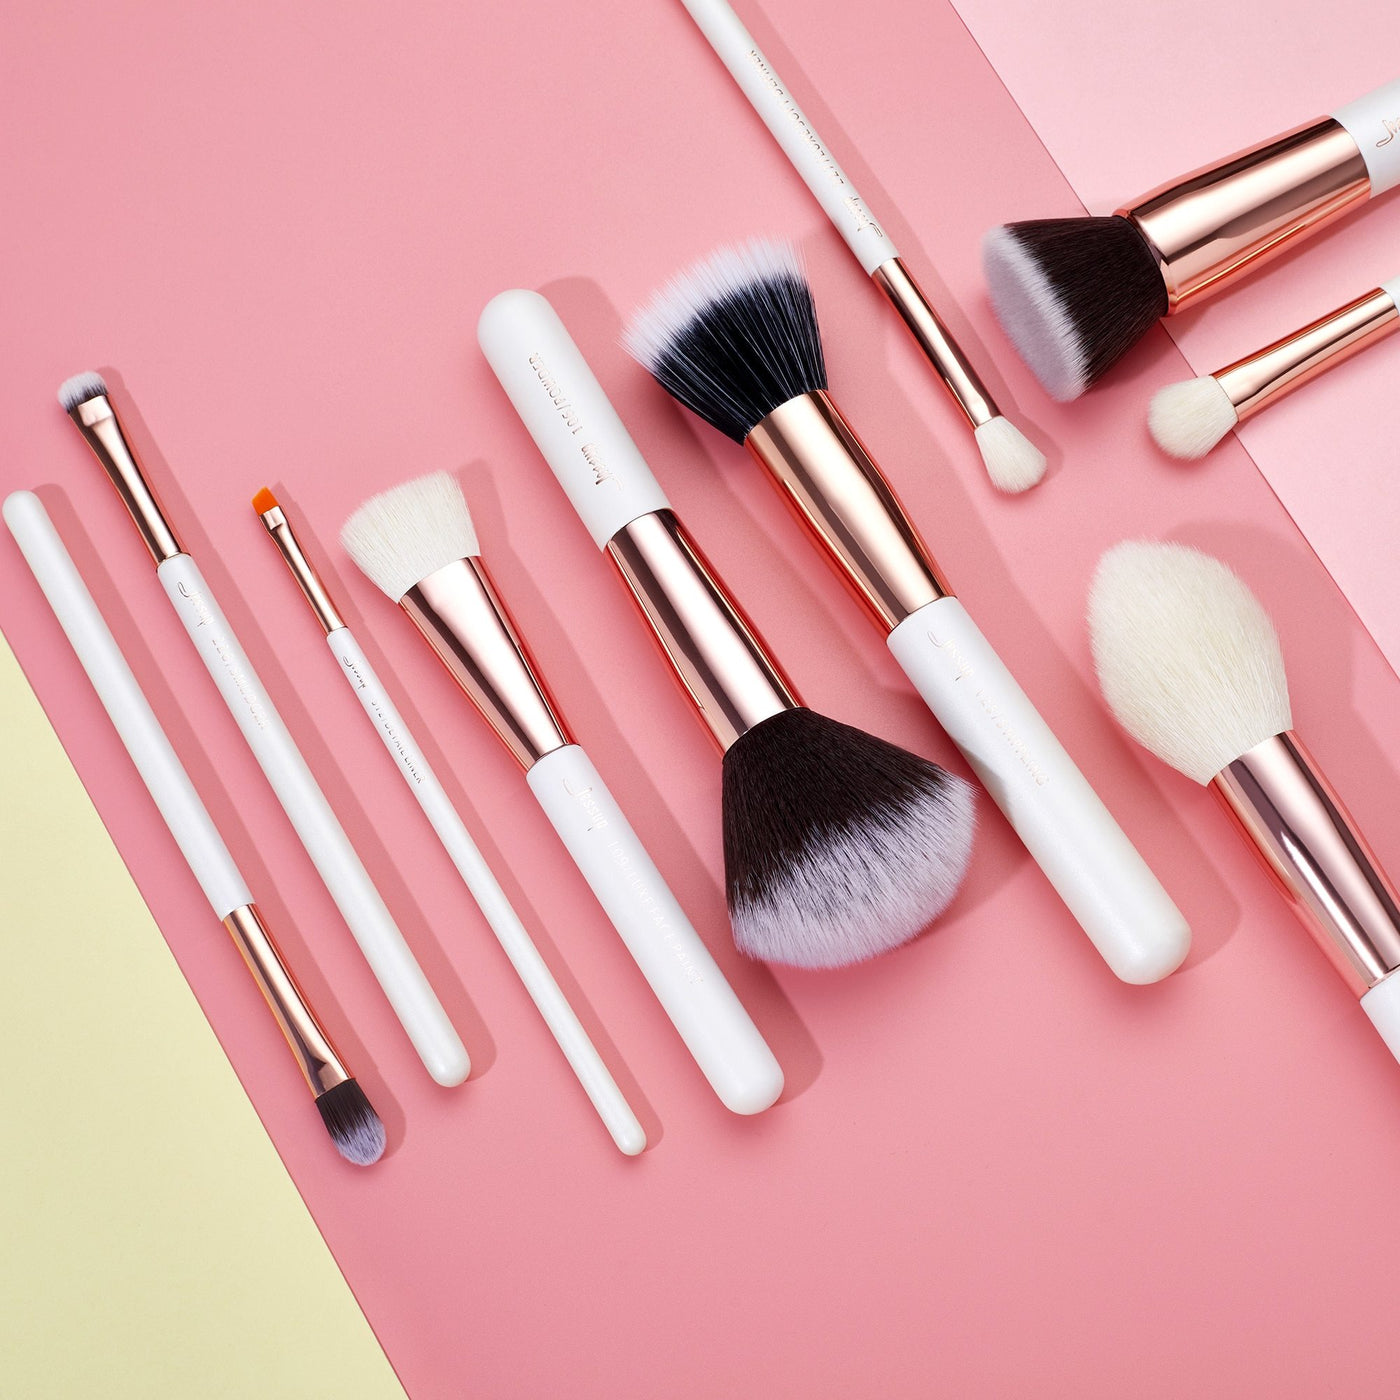 professional makeup brushes set white 15pcs  - Jessup Beauty UK